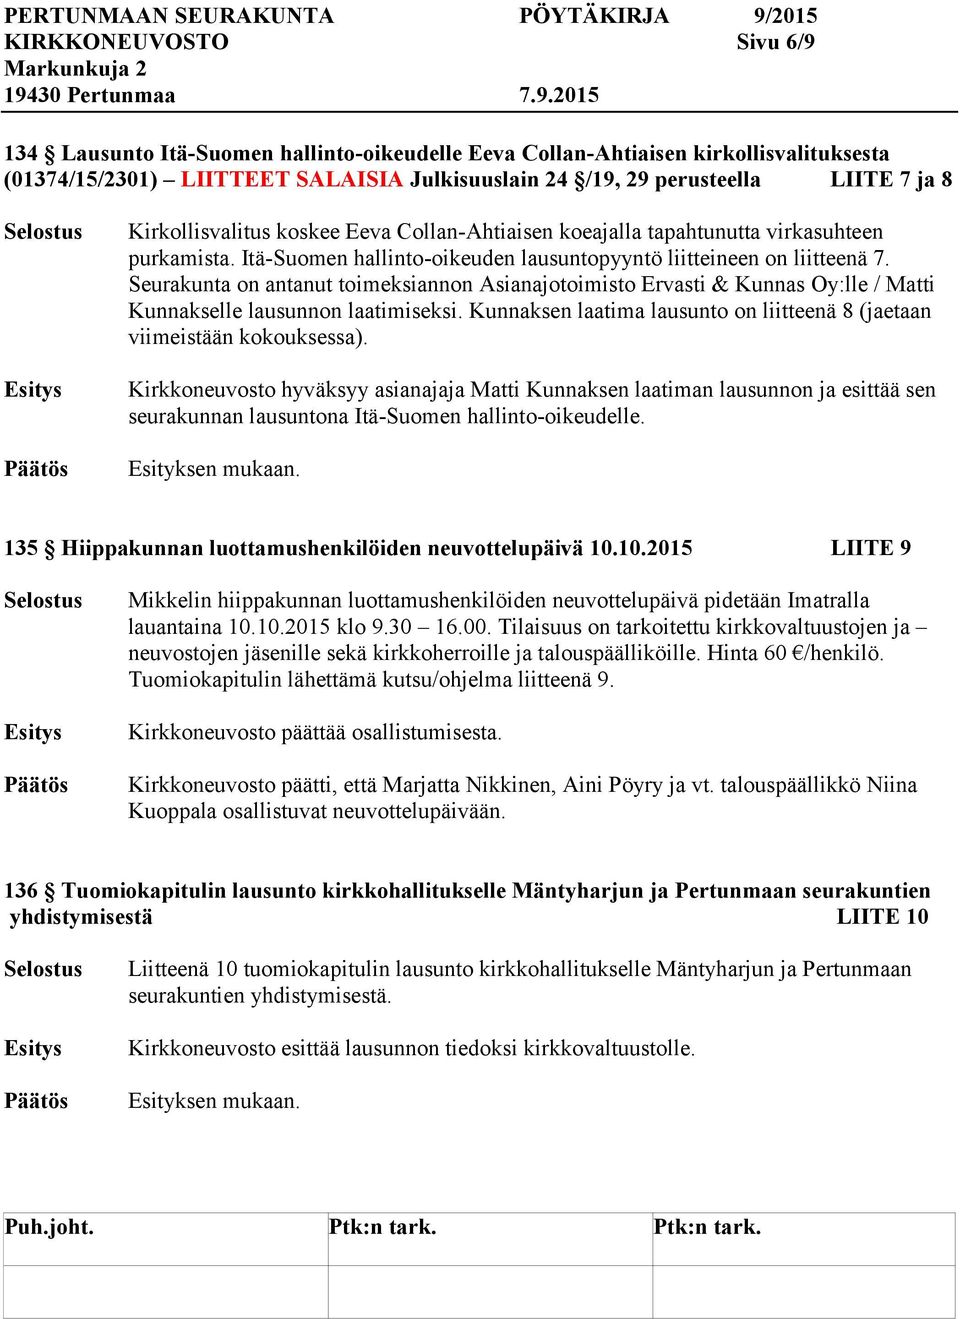 Seurakunta on antanut toimeksiannon Asianajotoimisto Ervasti & Kunnas Oy:lle / Matti Kunnakselle lausunnon laatimiseksi. Kunnaksen laatima lausunto on liitteenä 8 (jaetaan viimeistään kokouksessa).